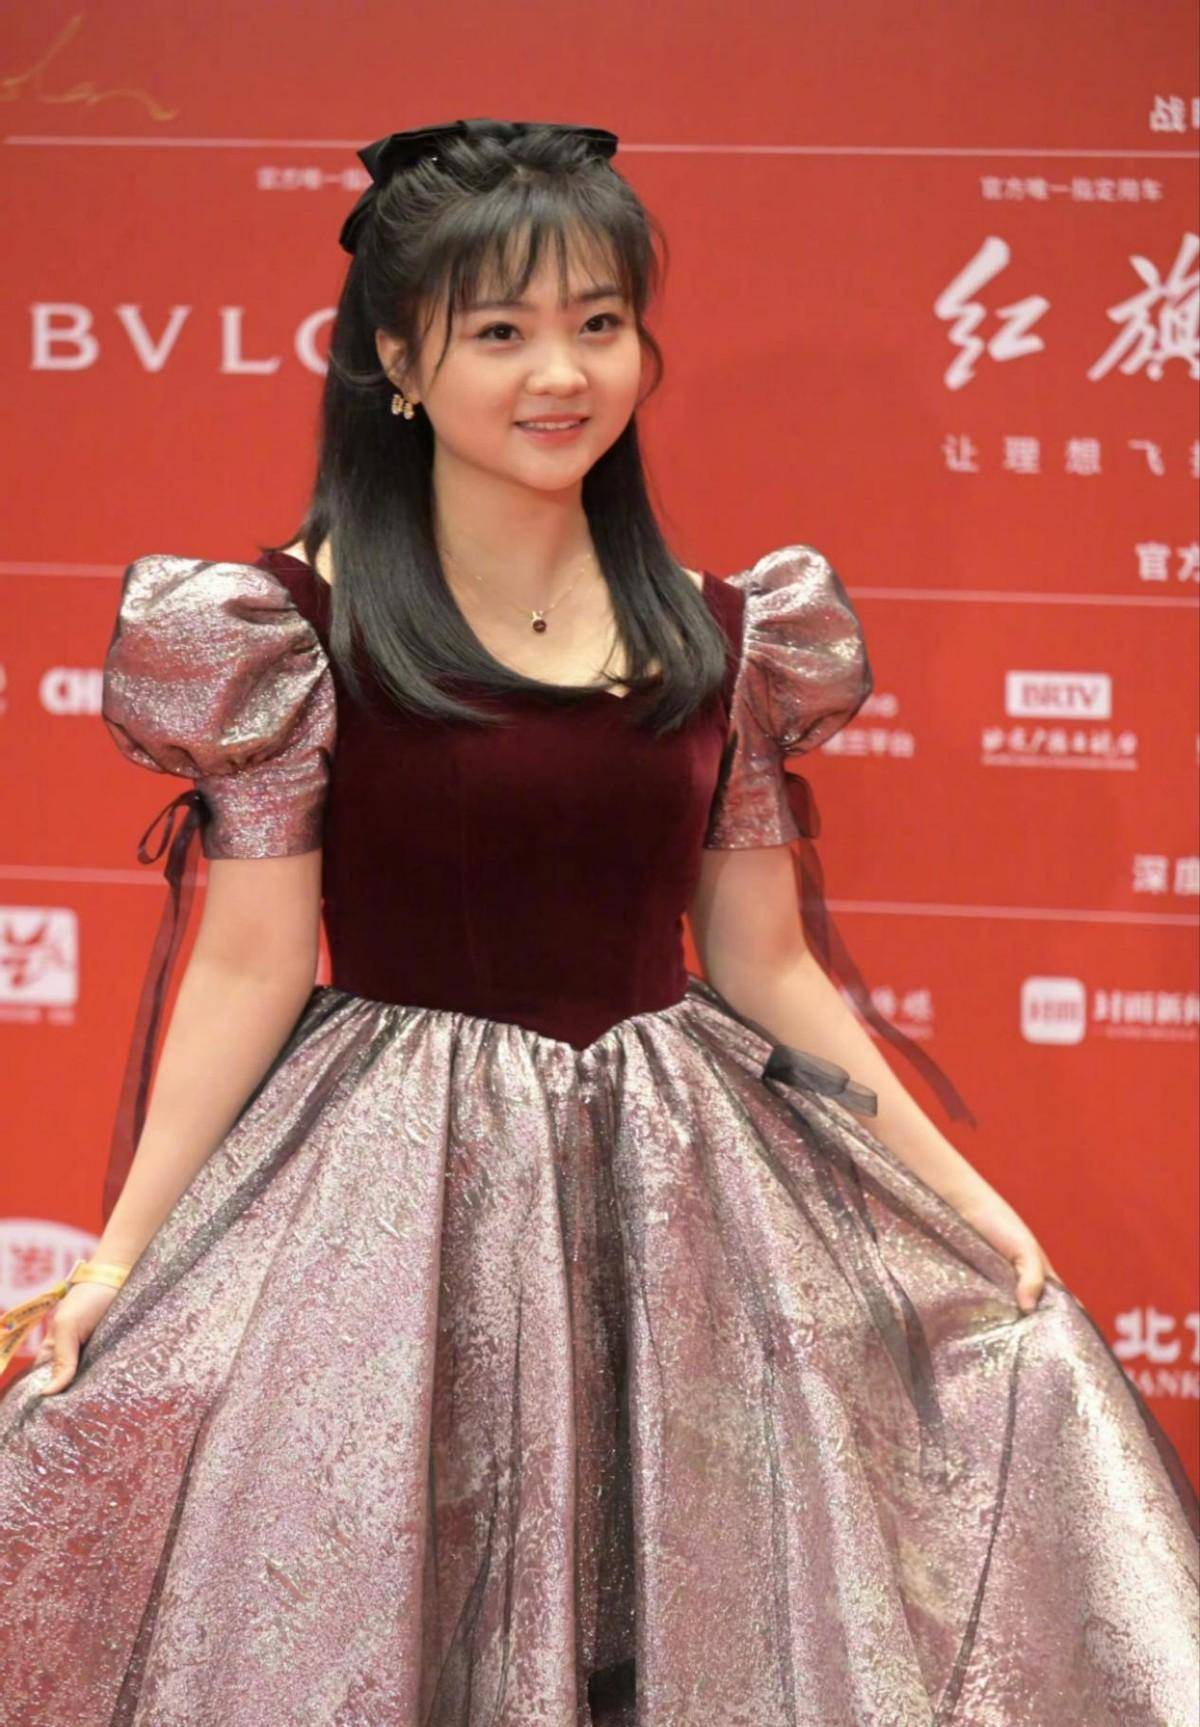 林妙可24岁,审美没有变,很少见她身着公主裙走红毯,他像阿姨